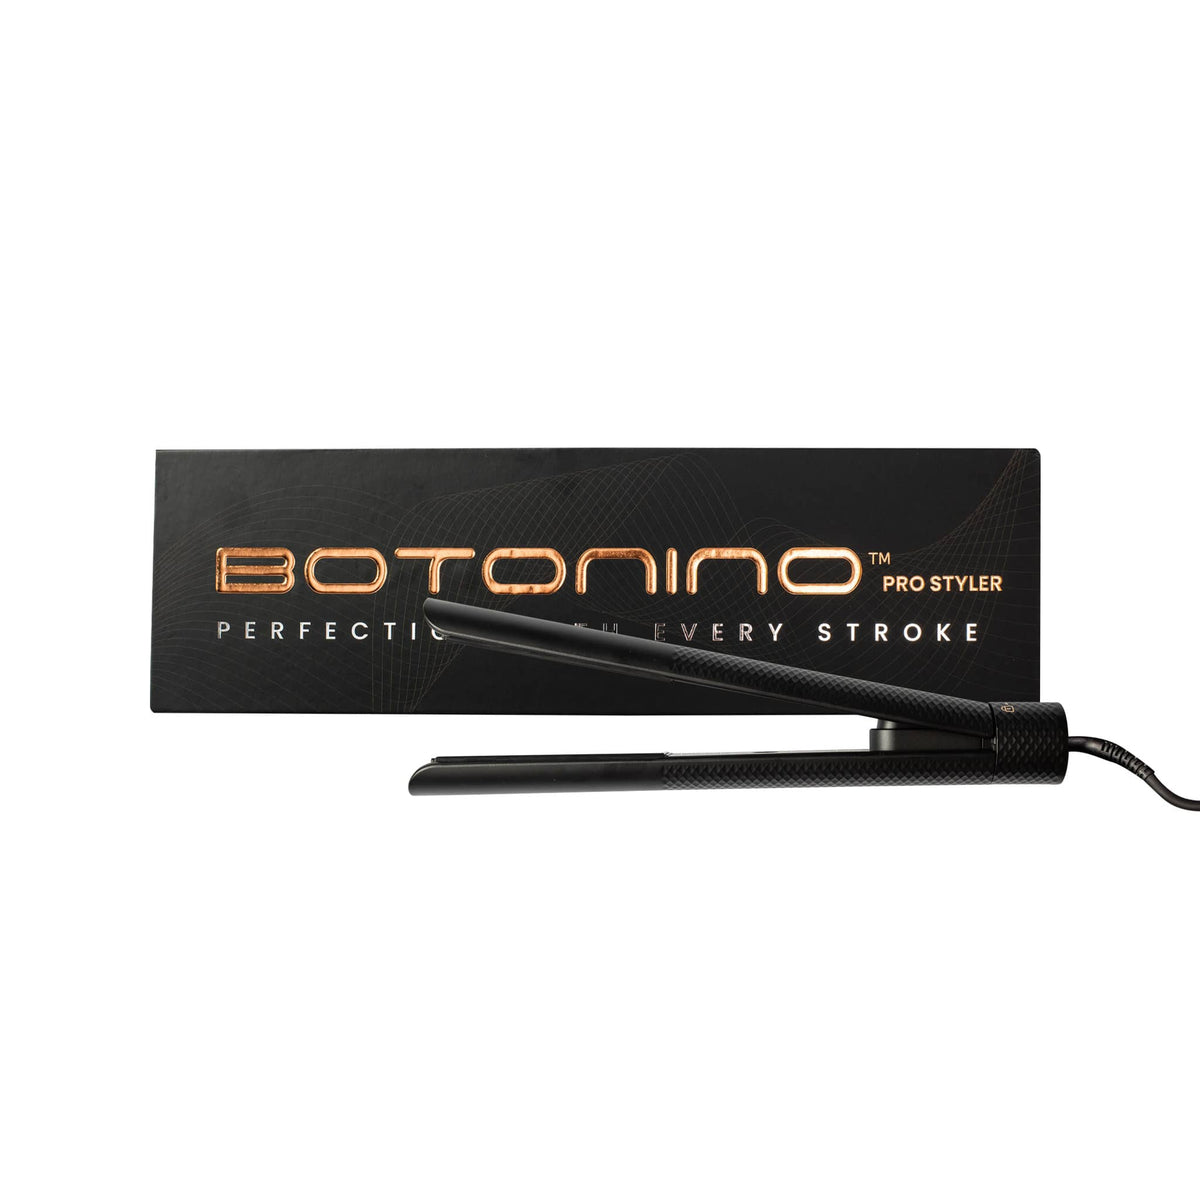 Botonino Pro Styler - Shop Online | Retail Box